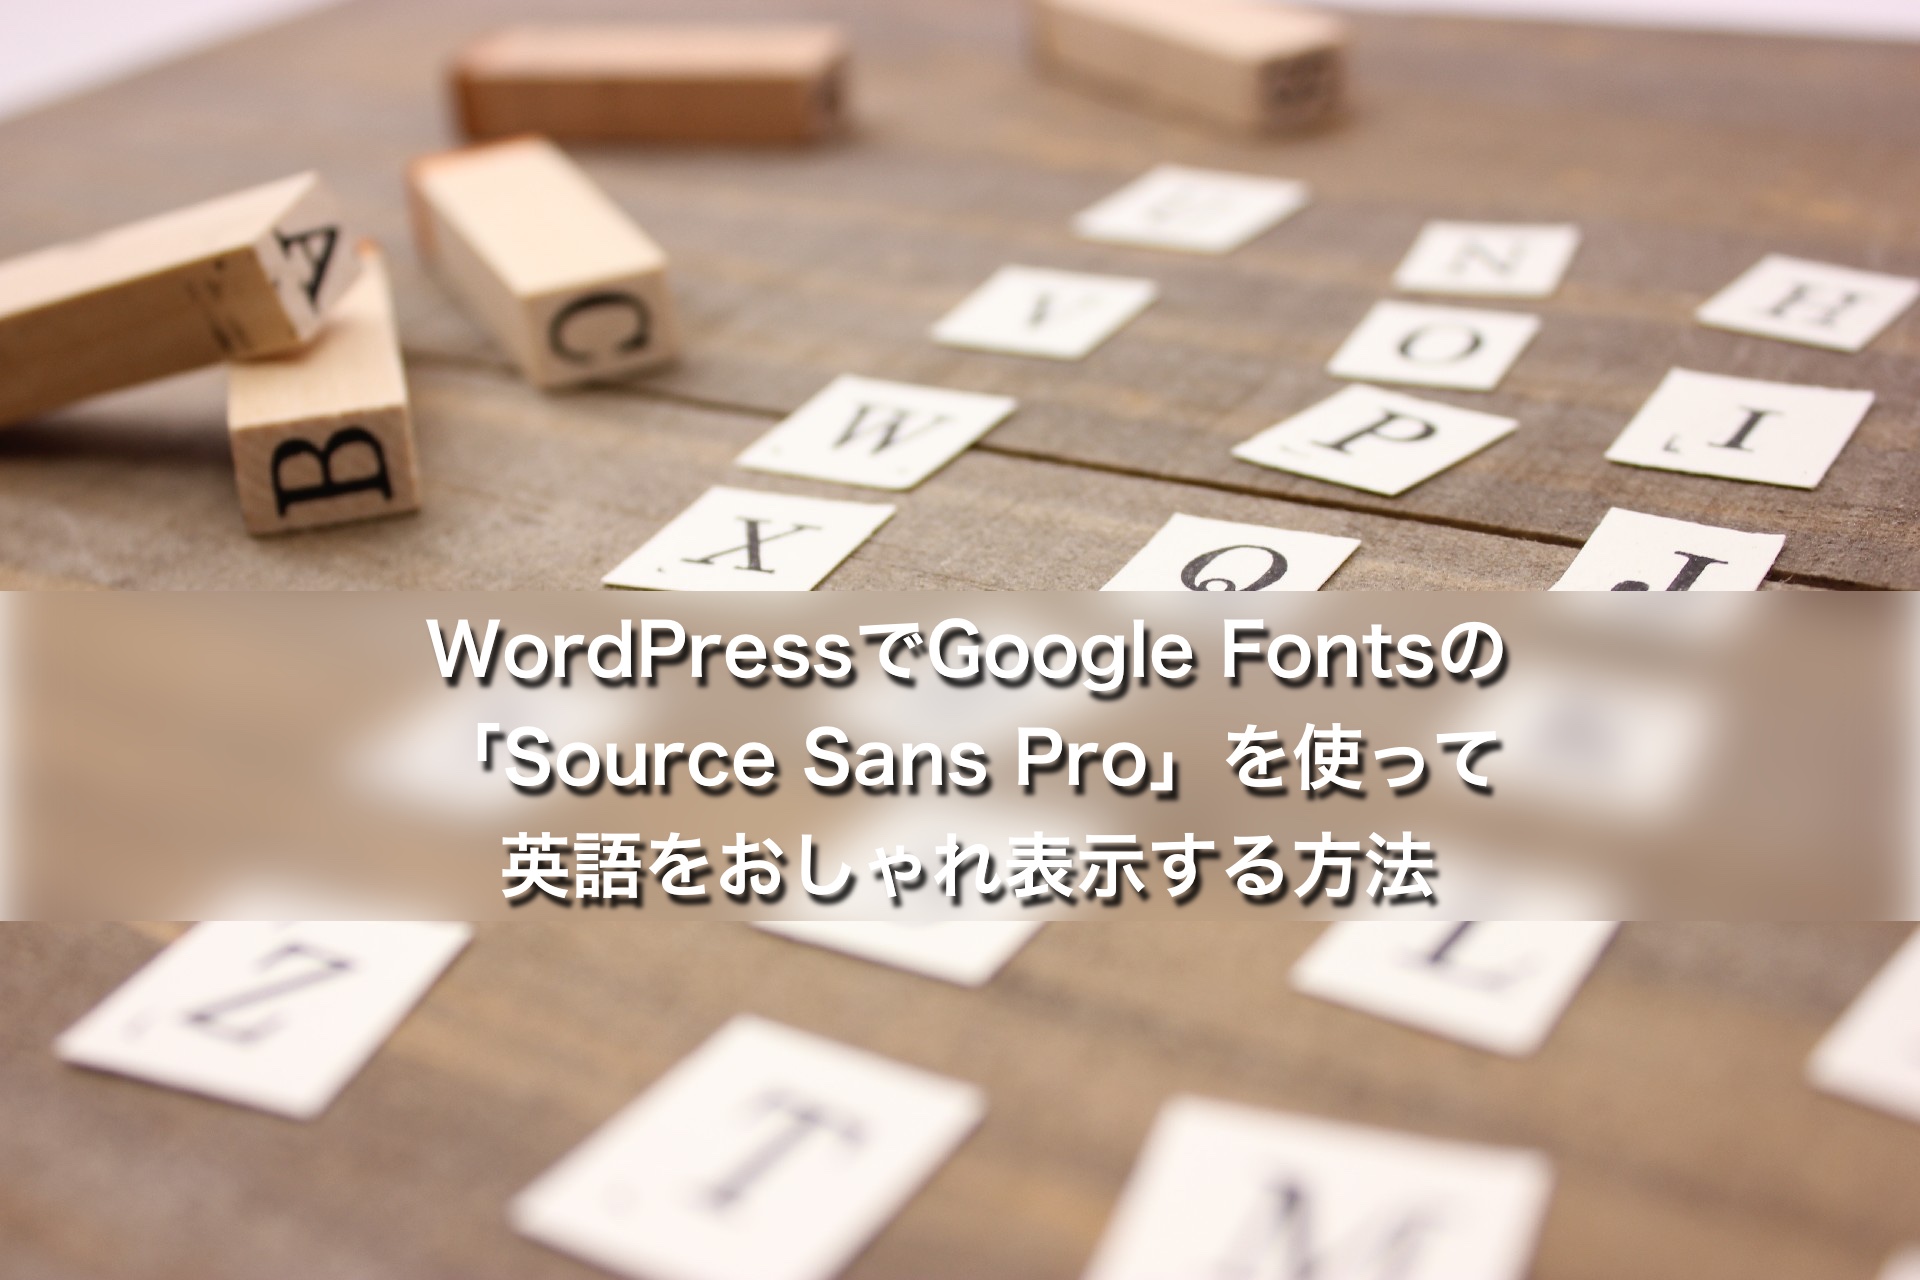 WordPressでGoogle Fontsの「Source Sans Pro」を使って英語をおしゃれ表示する方法